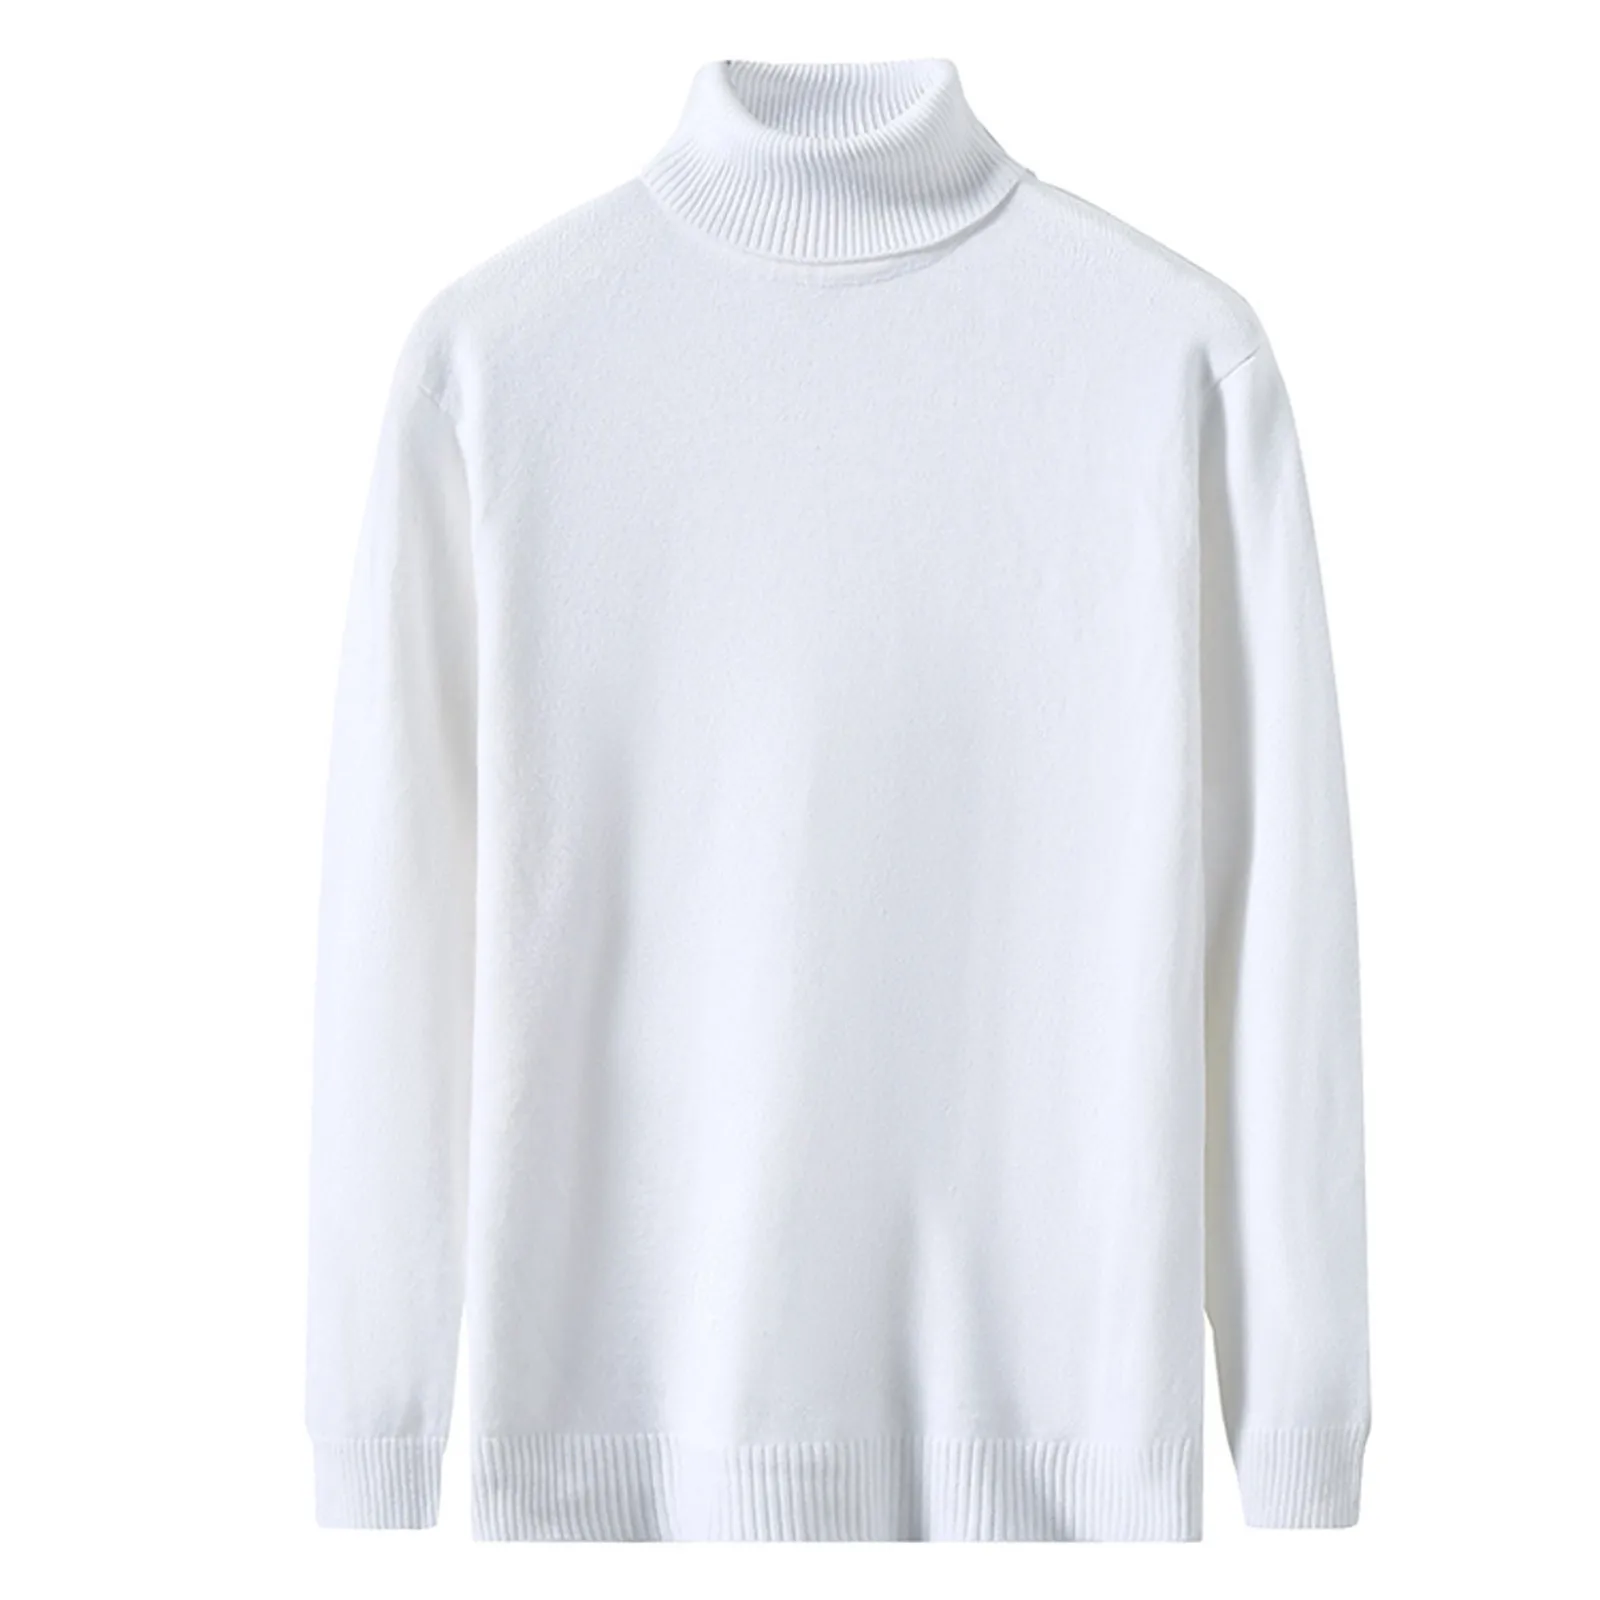 Высококачественный свитер, пуловер, модные топы, вязаные свитера для мужчин, флисовый джемпер, вязаная одежда на осень и зиму, теплая одежда с длинным рукавом